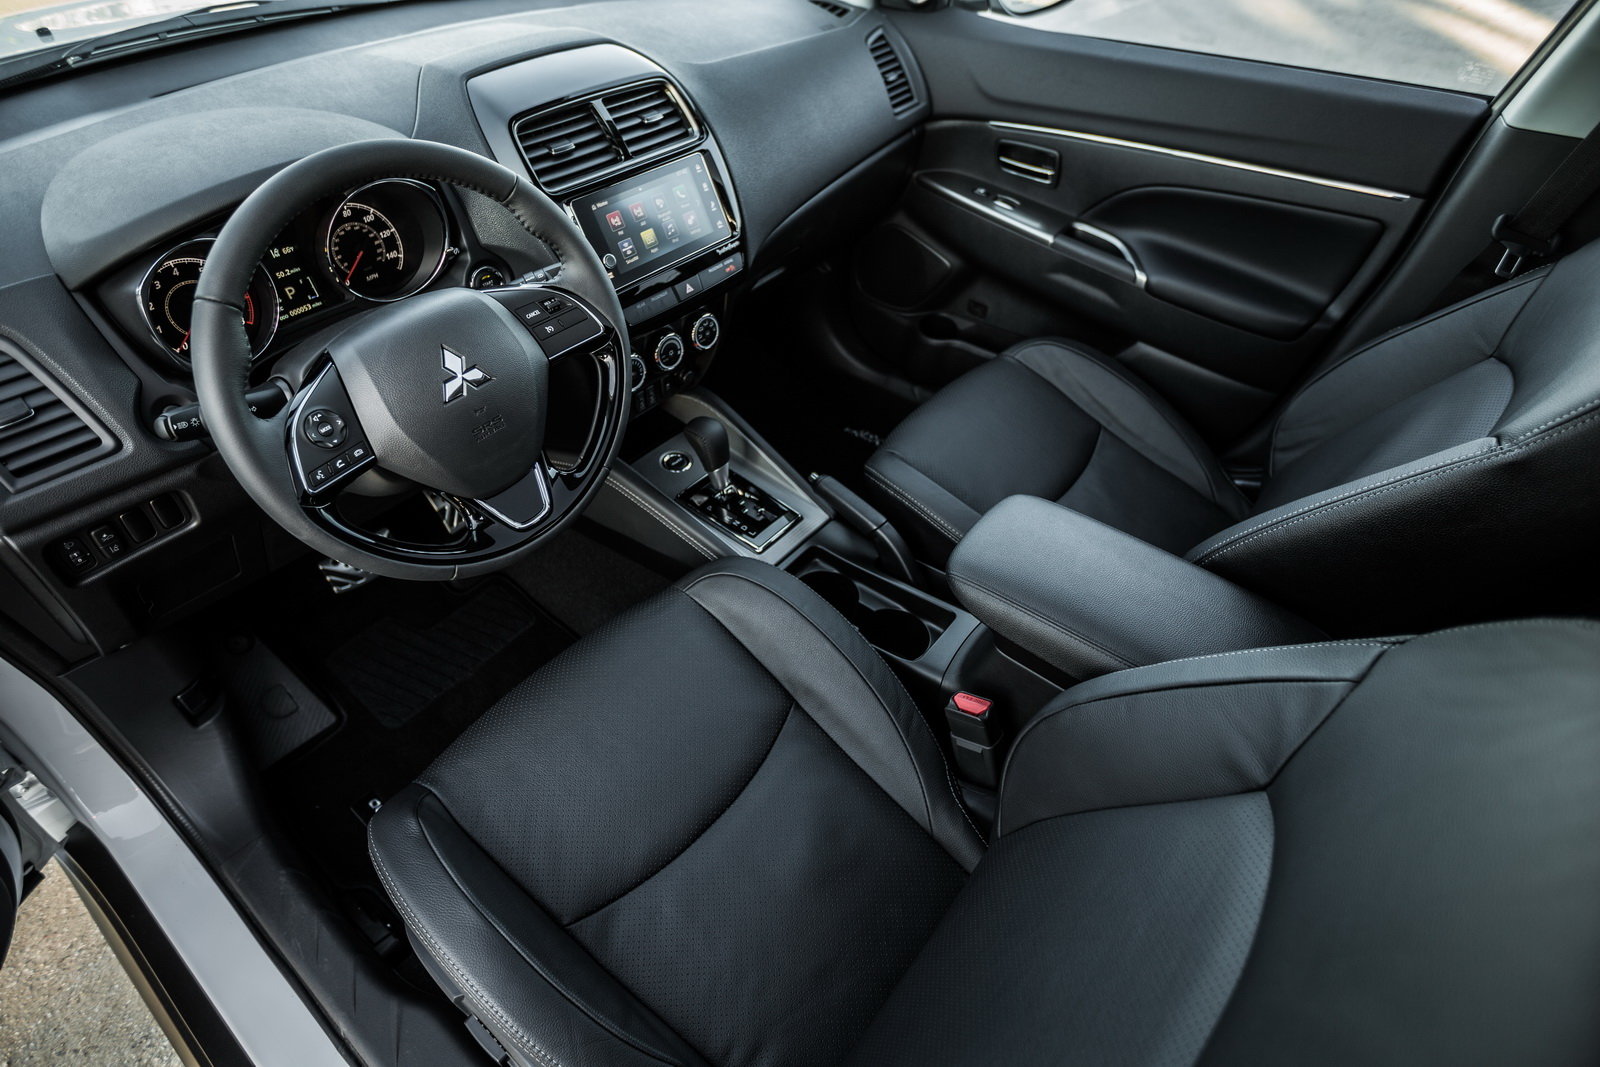 Mitsubishi překvapilo faceliftem malého ASX na autosalonu v New Yorku, moderní prvky konkurence ale postrádá i nadále